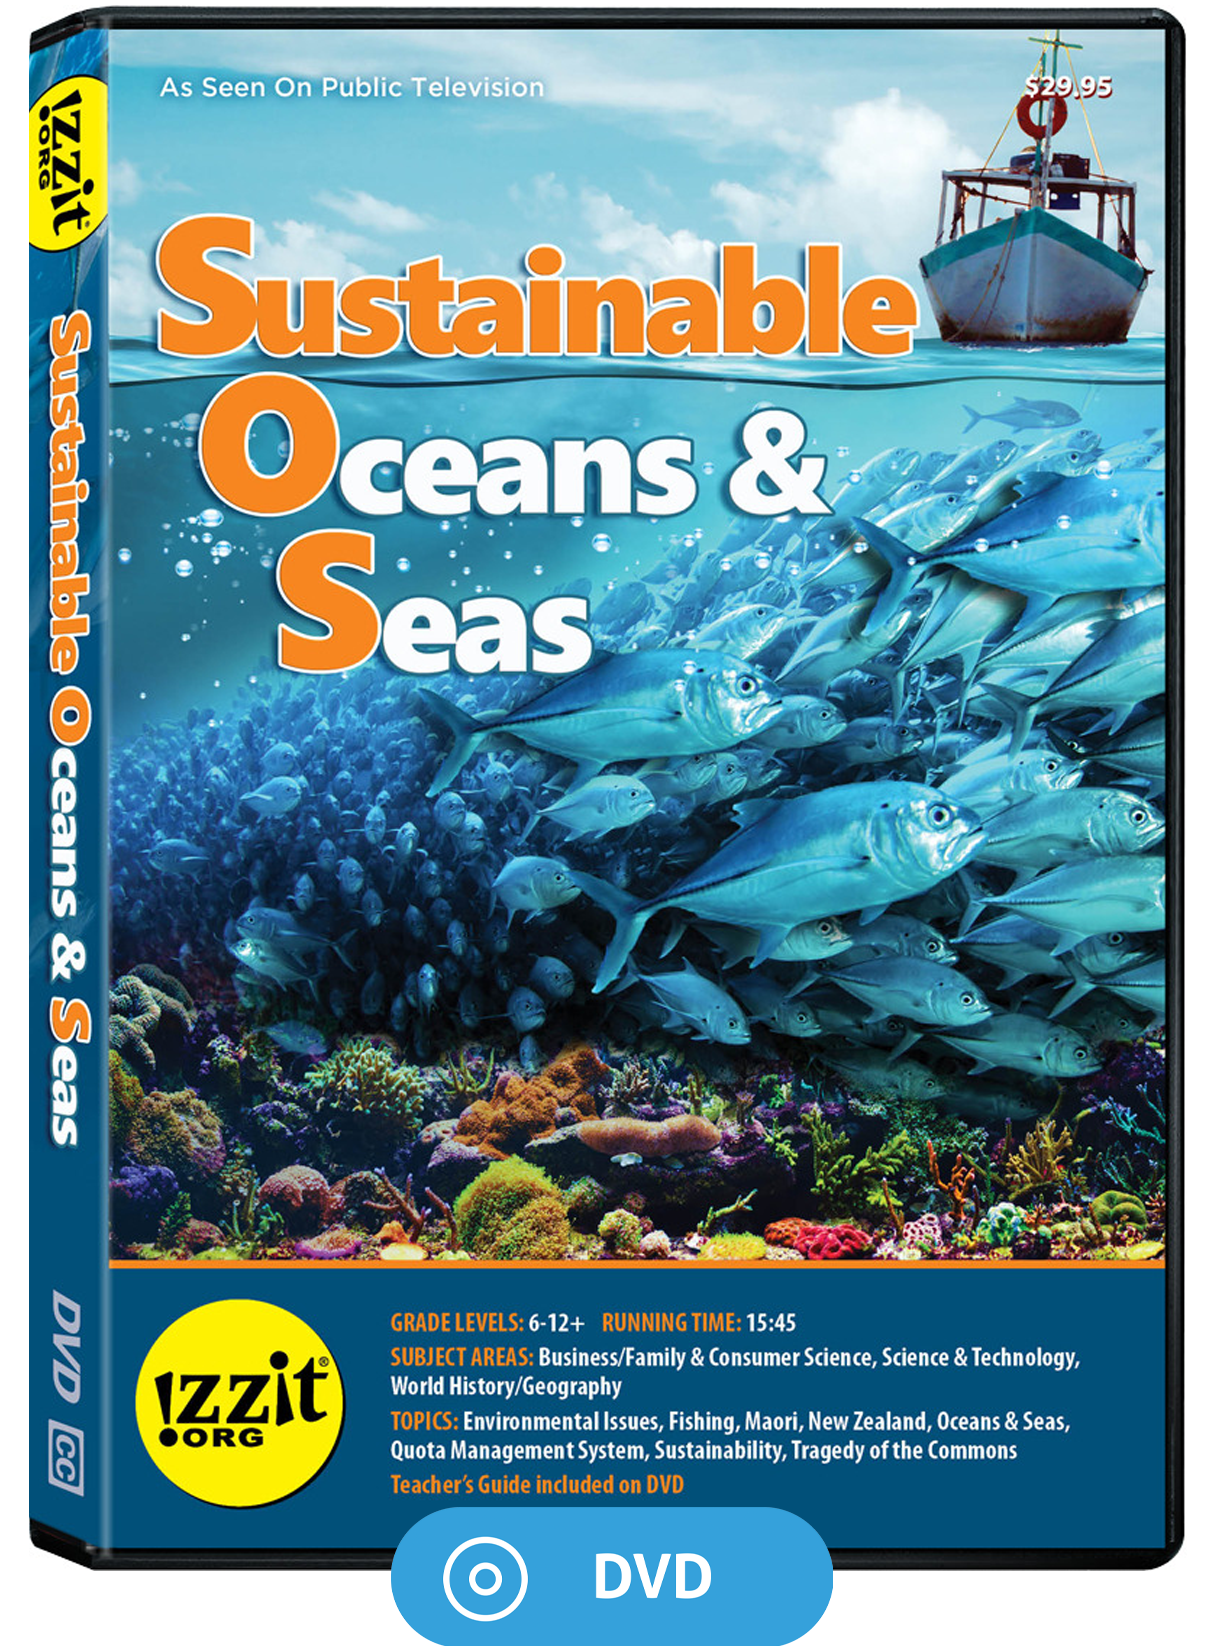 Sustainable Oceans & Seas DVD